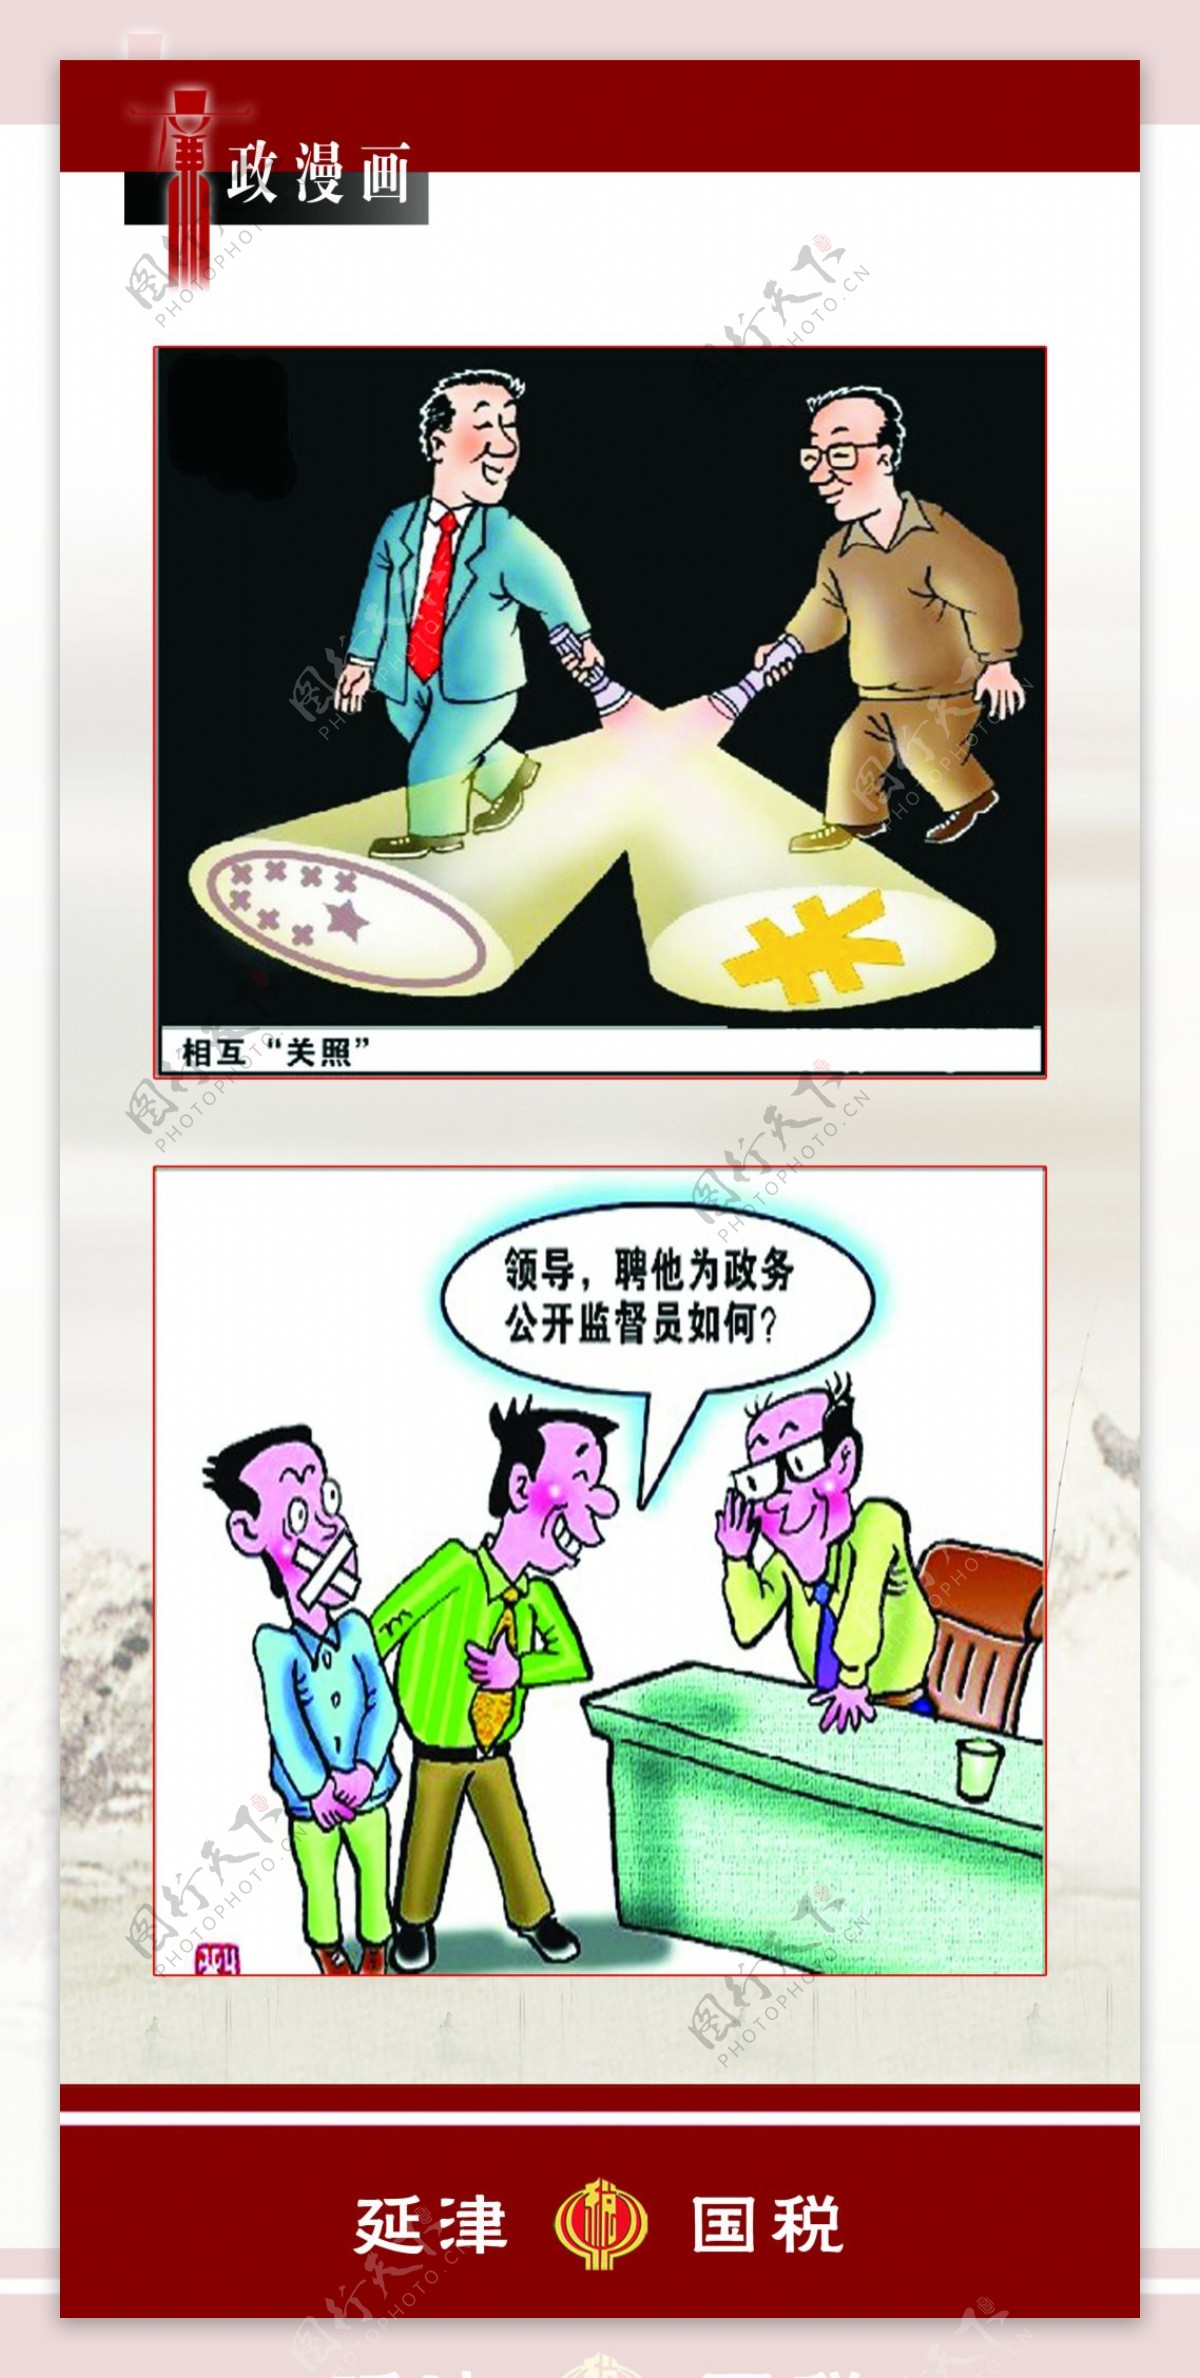 国税局廉政漫画